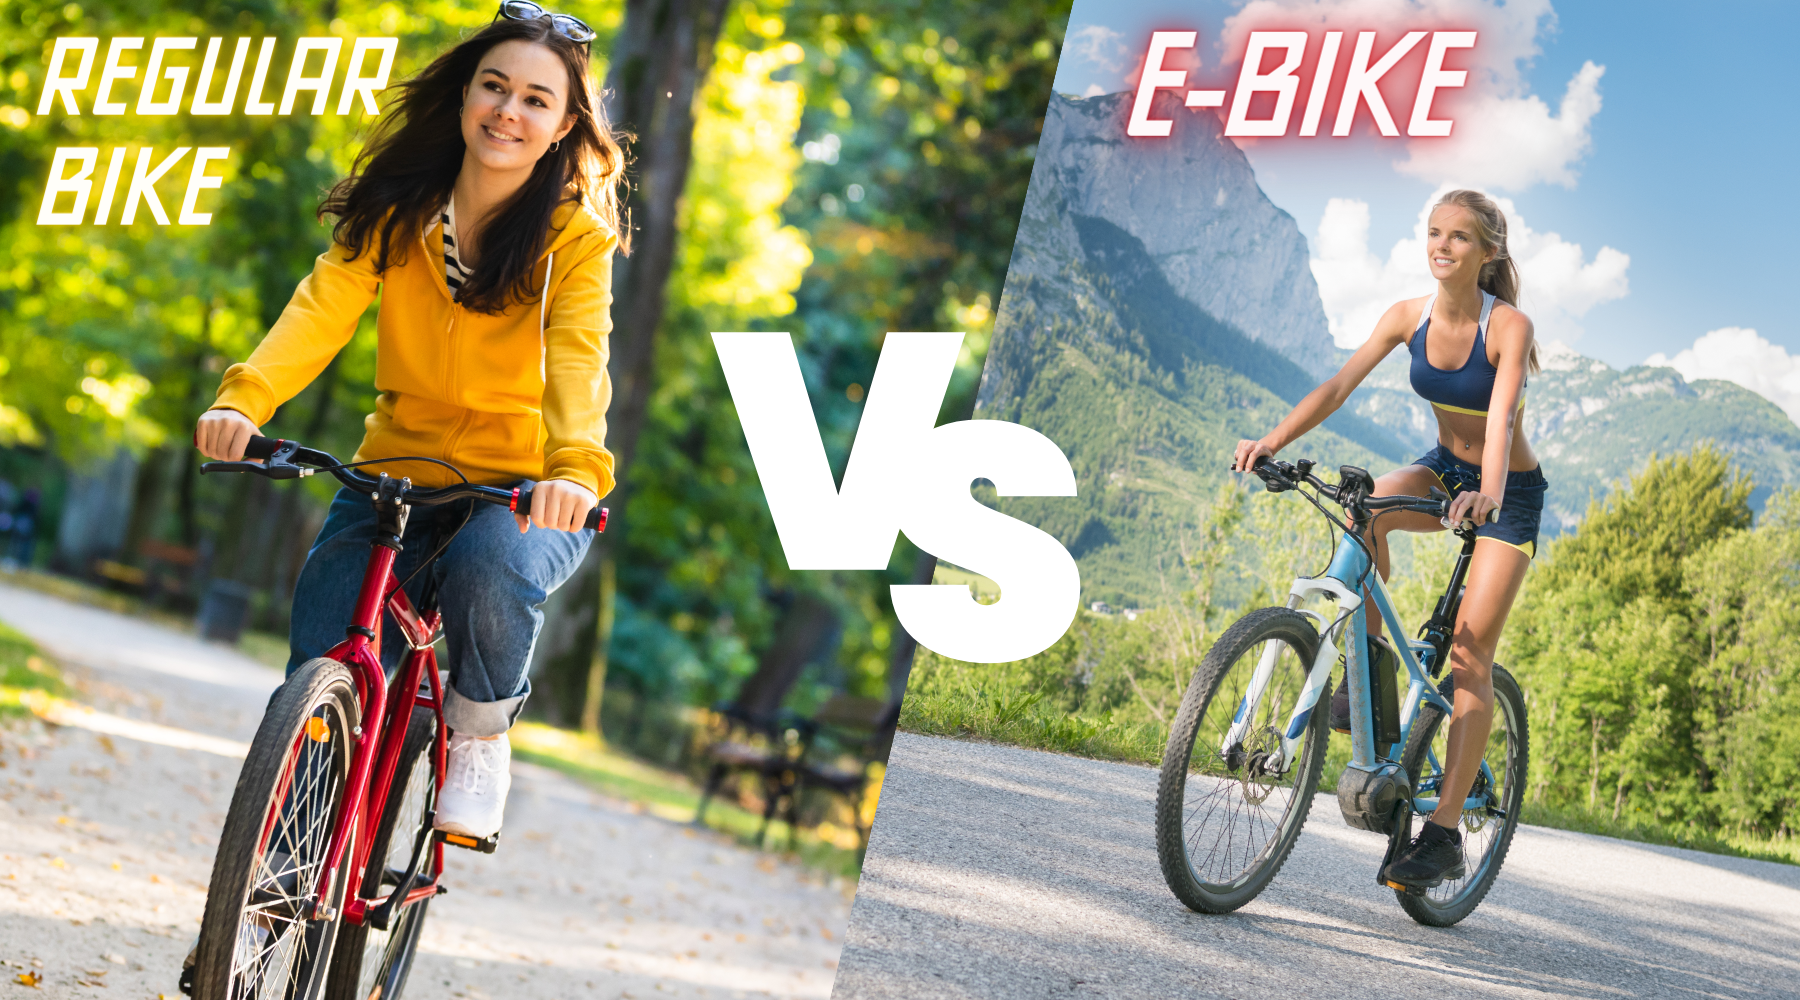 E-Bike vs. Regular Bike: Which is Easier to Ride?